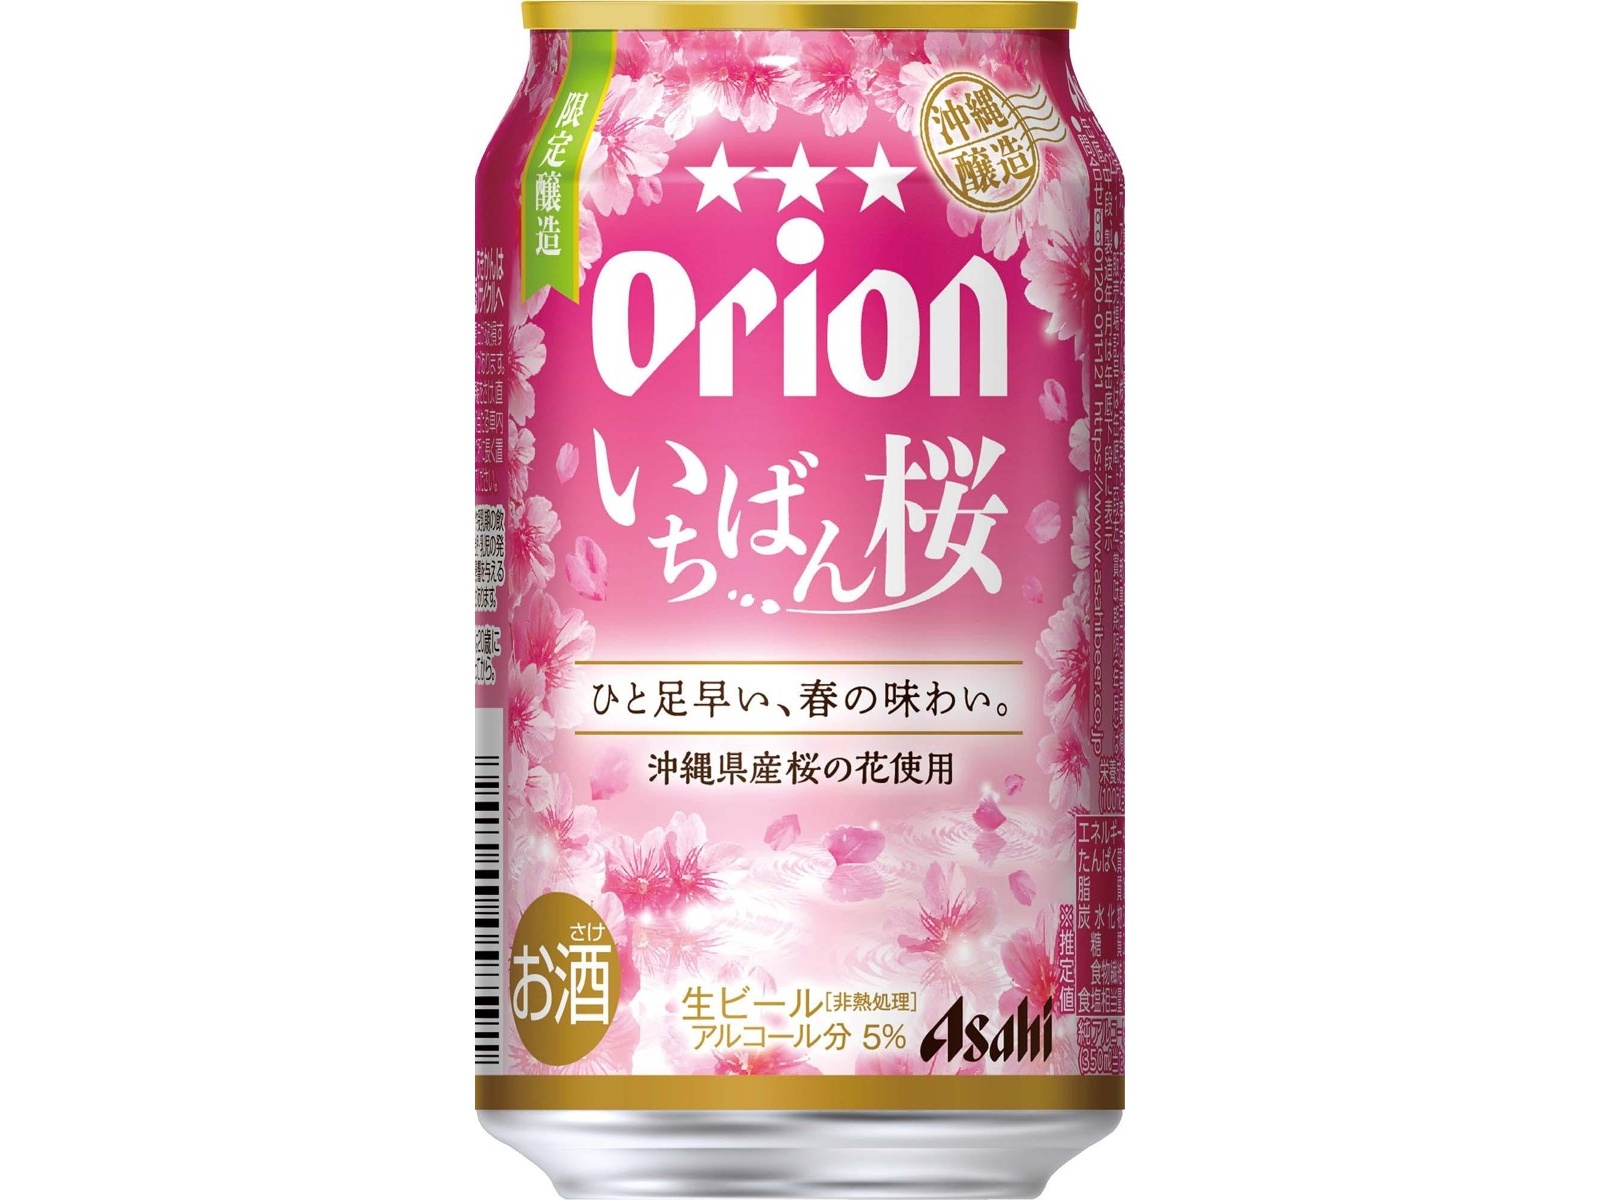 アサヒ オリオンいちばん桜 350ml×6缶組| コープこうべネット